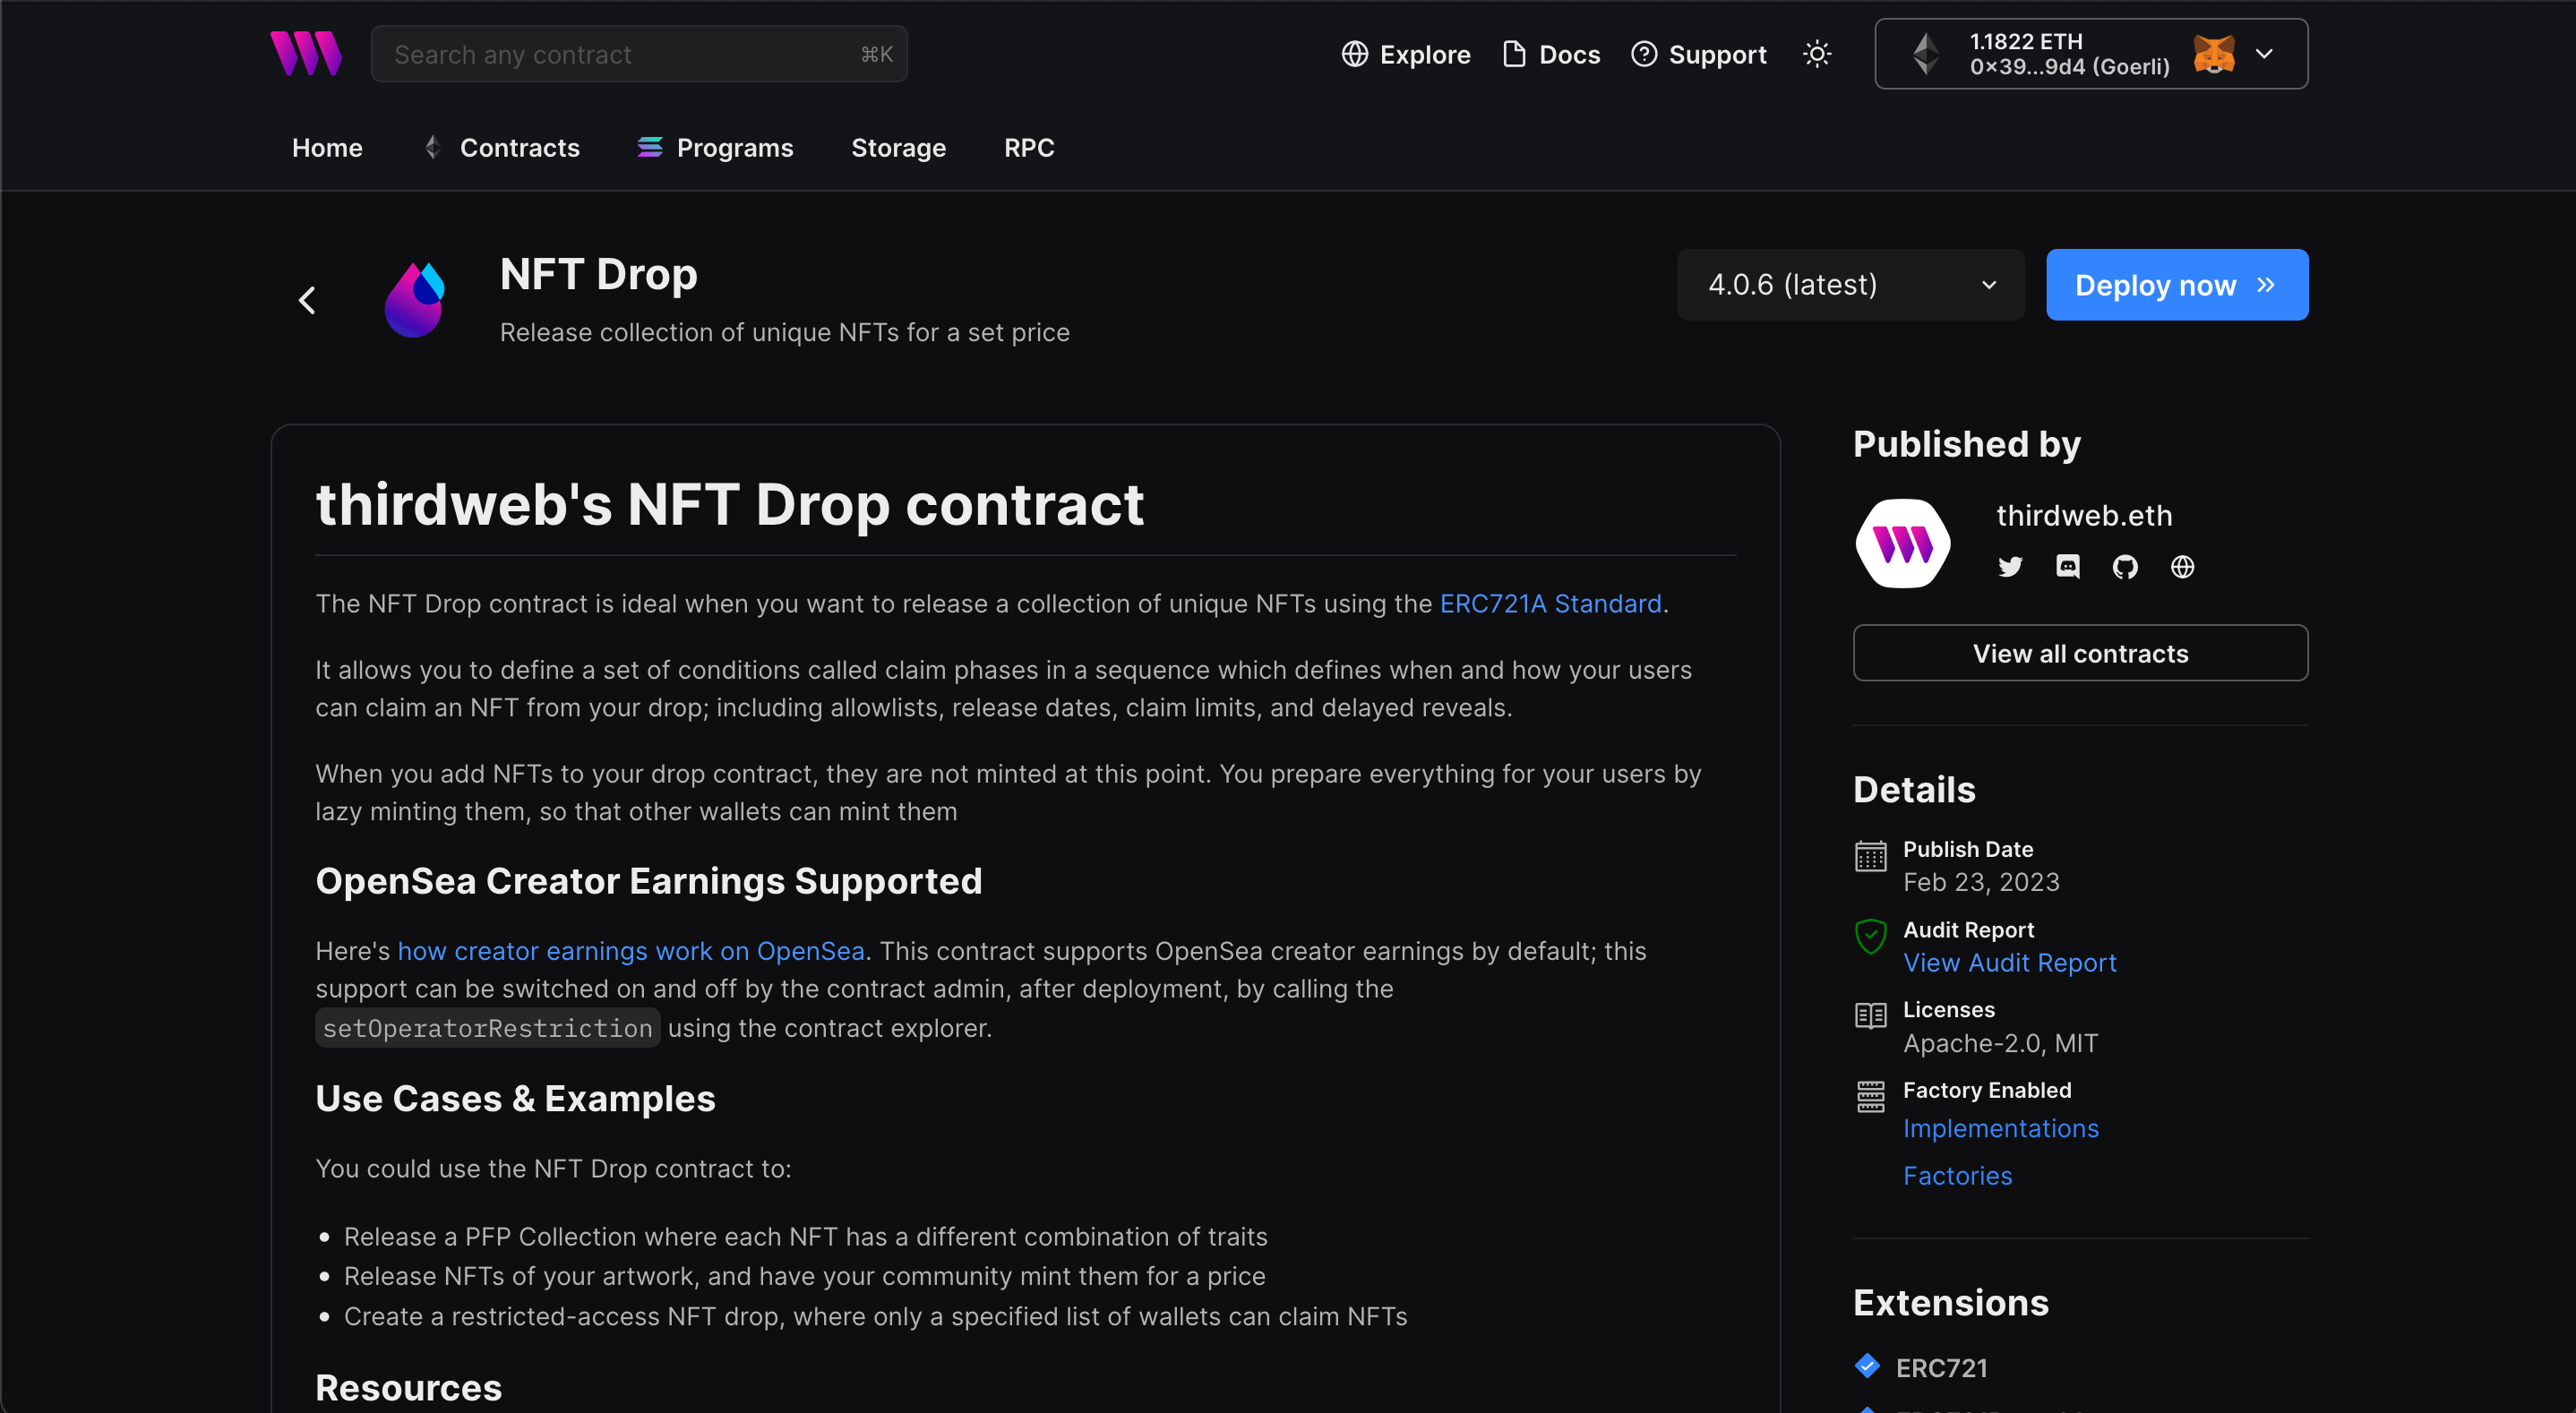 thirdweb's NFT Drop Contract